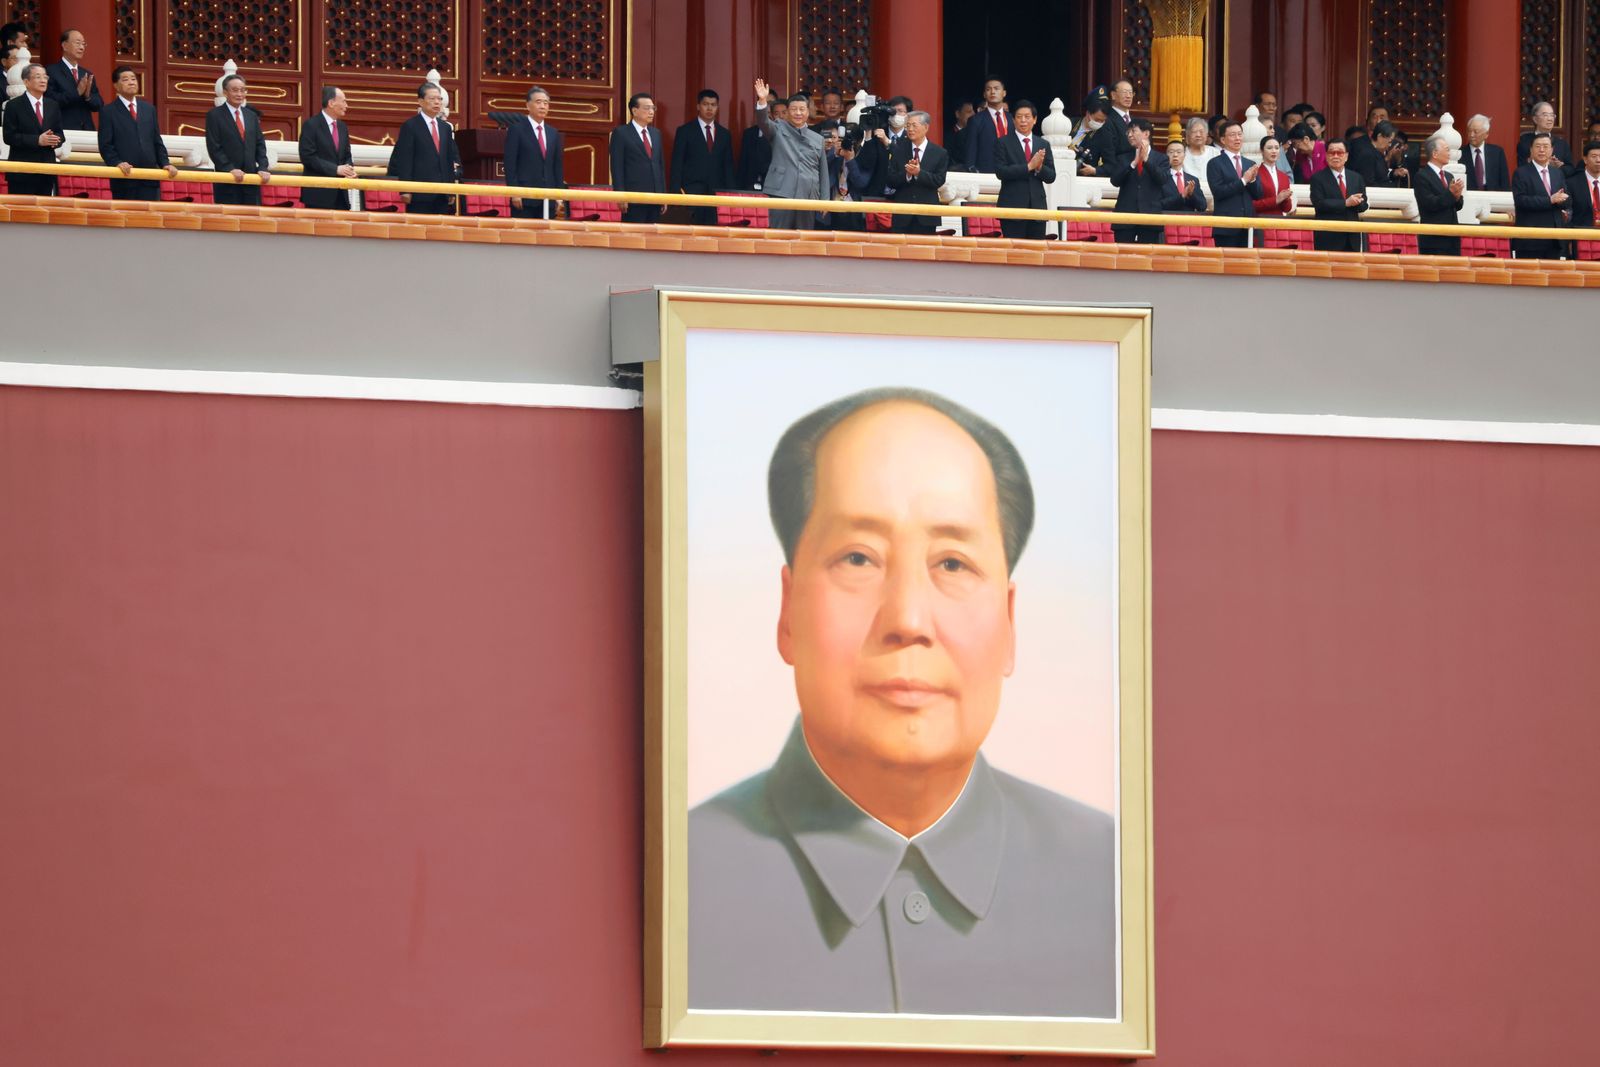 الرئيس الصيني شي جين بينغ يلوّح فوق صورة عملاقة للزعيم الصيني الراحل ماو تسي تونغ في بكين - 1 يوليو 2021 - REUTERS